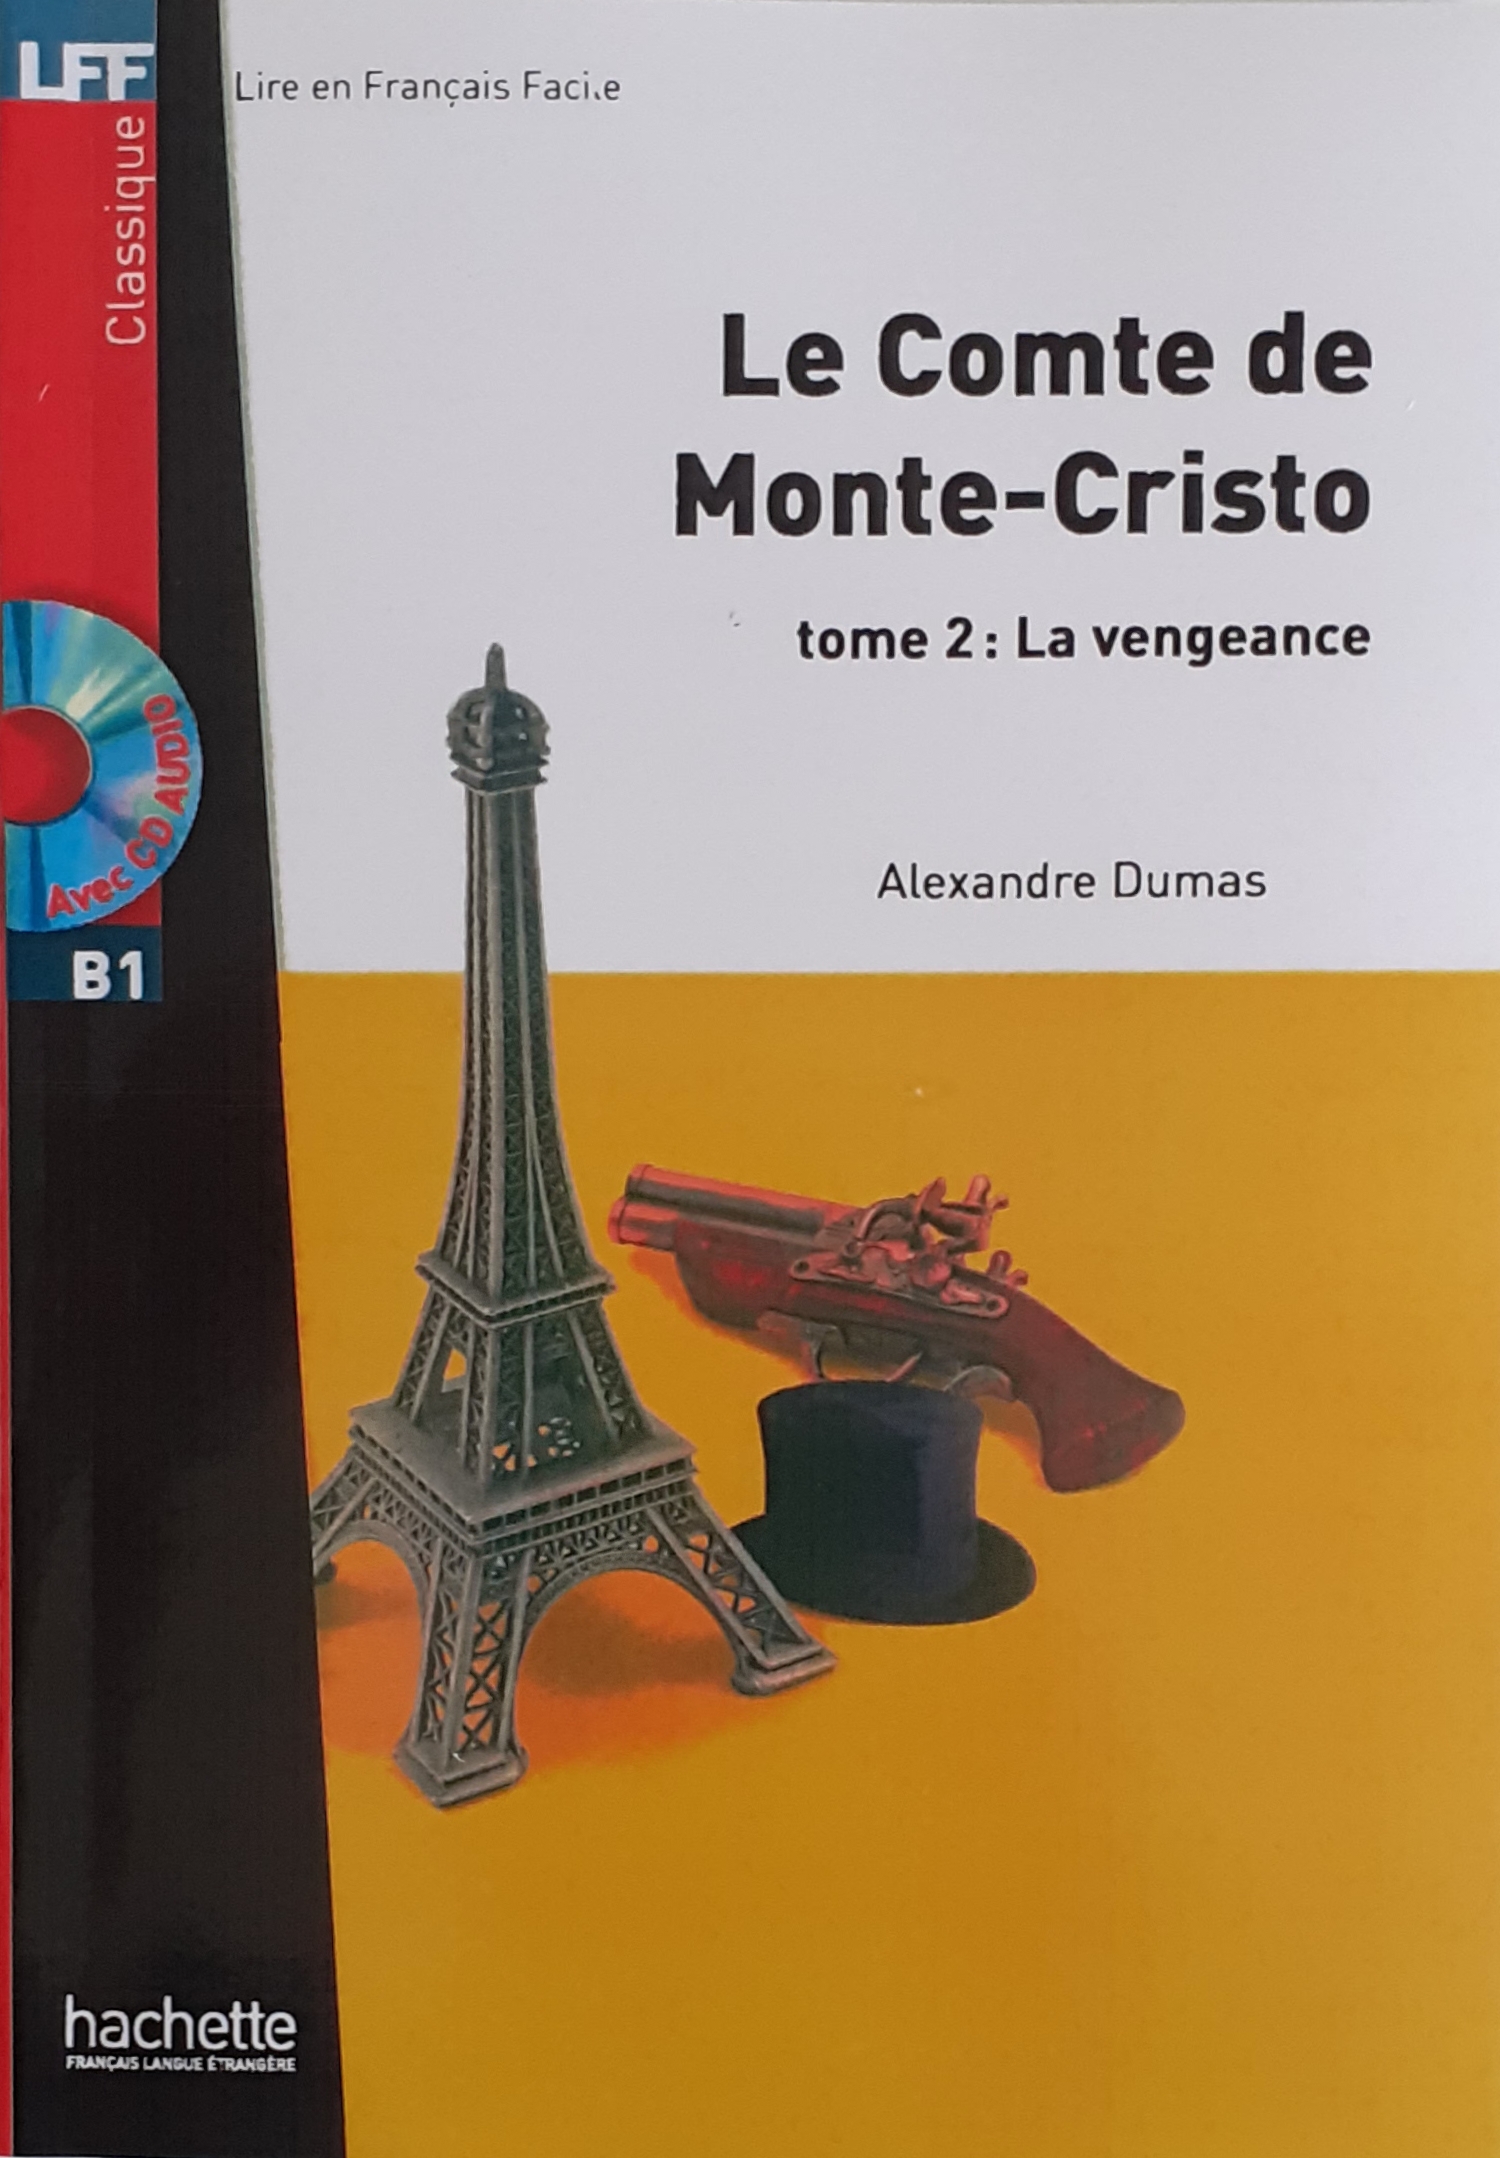 کتاب داستان فرانسه کنت مونت کریستو le comte de monte cristo